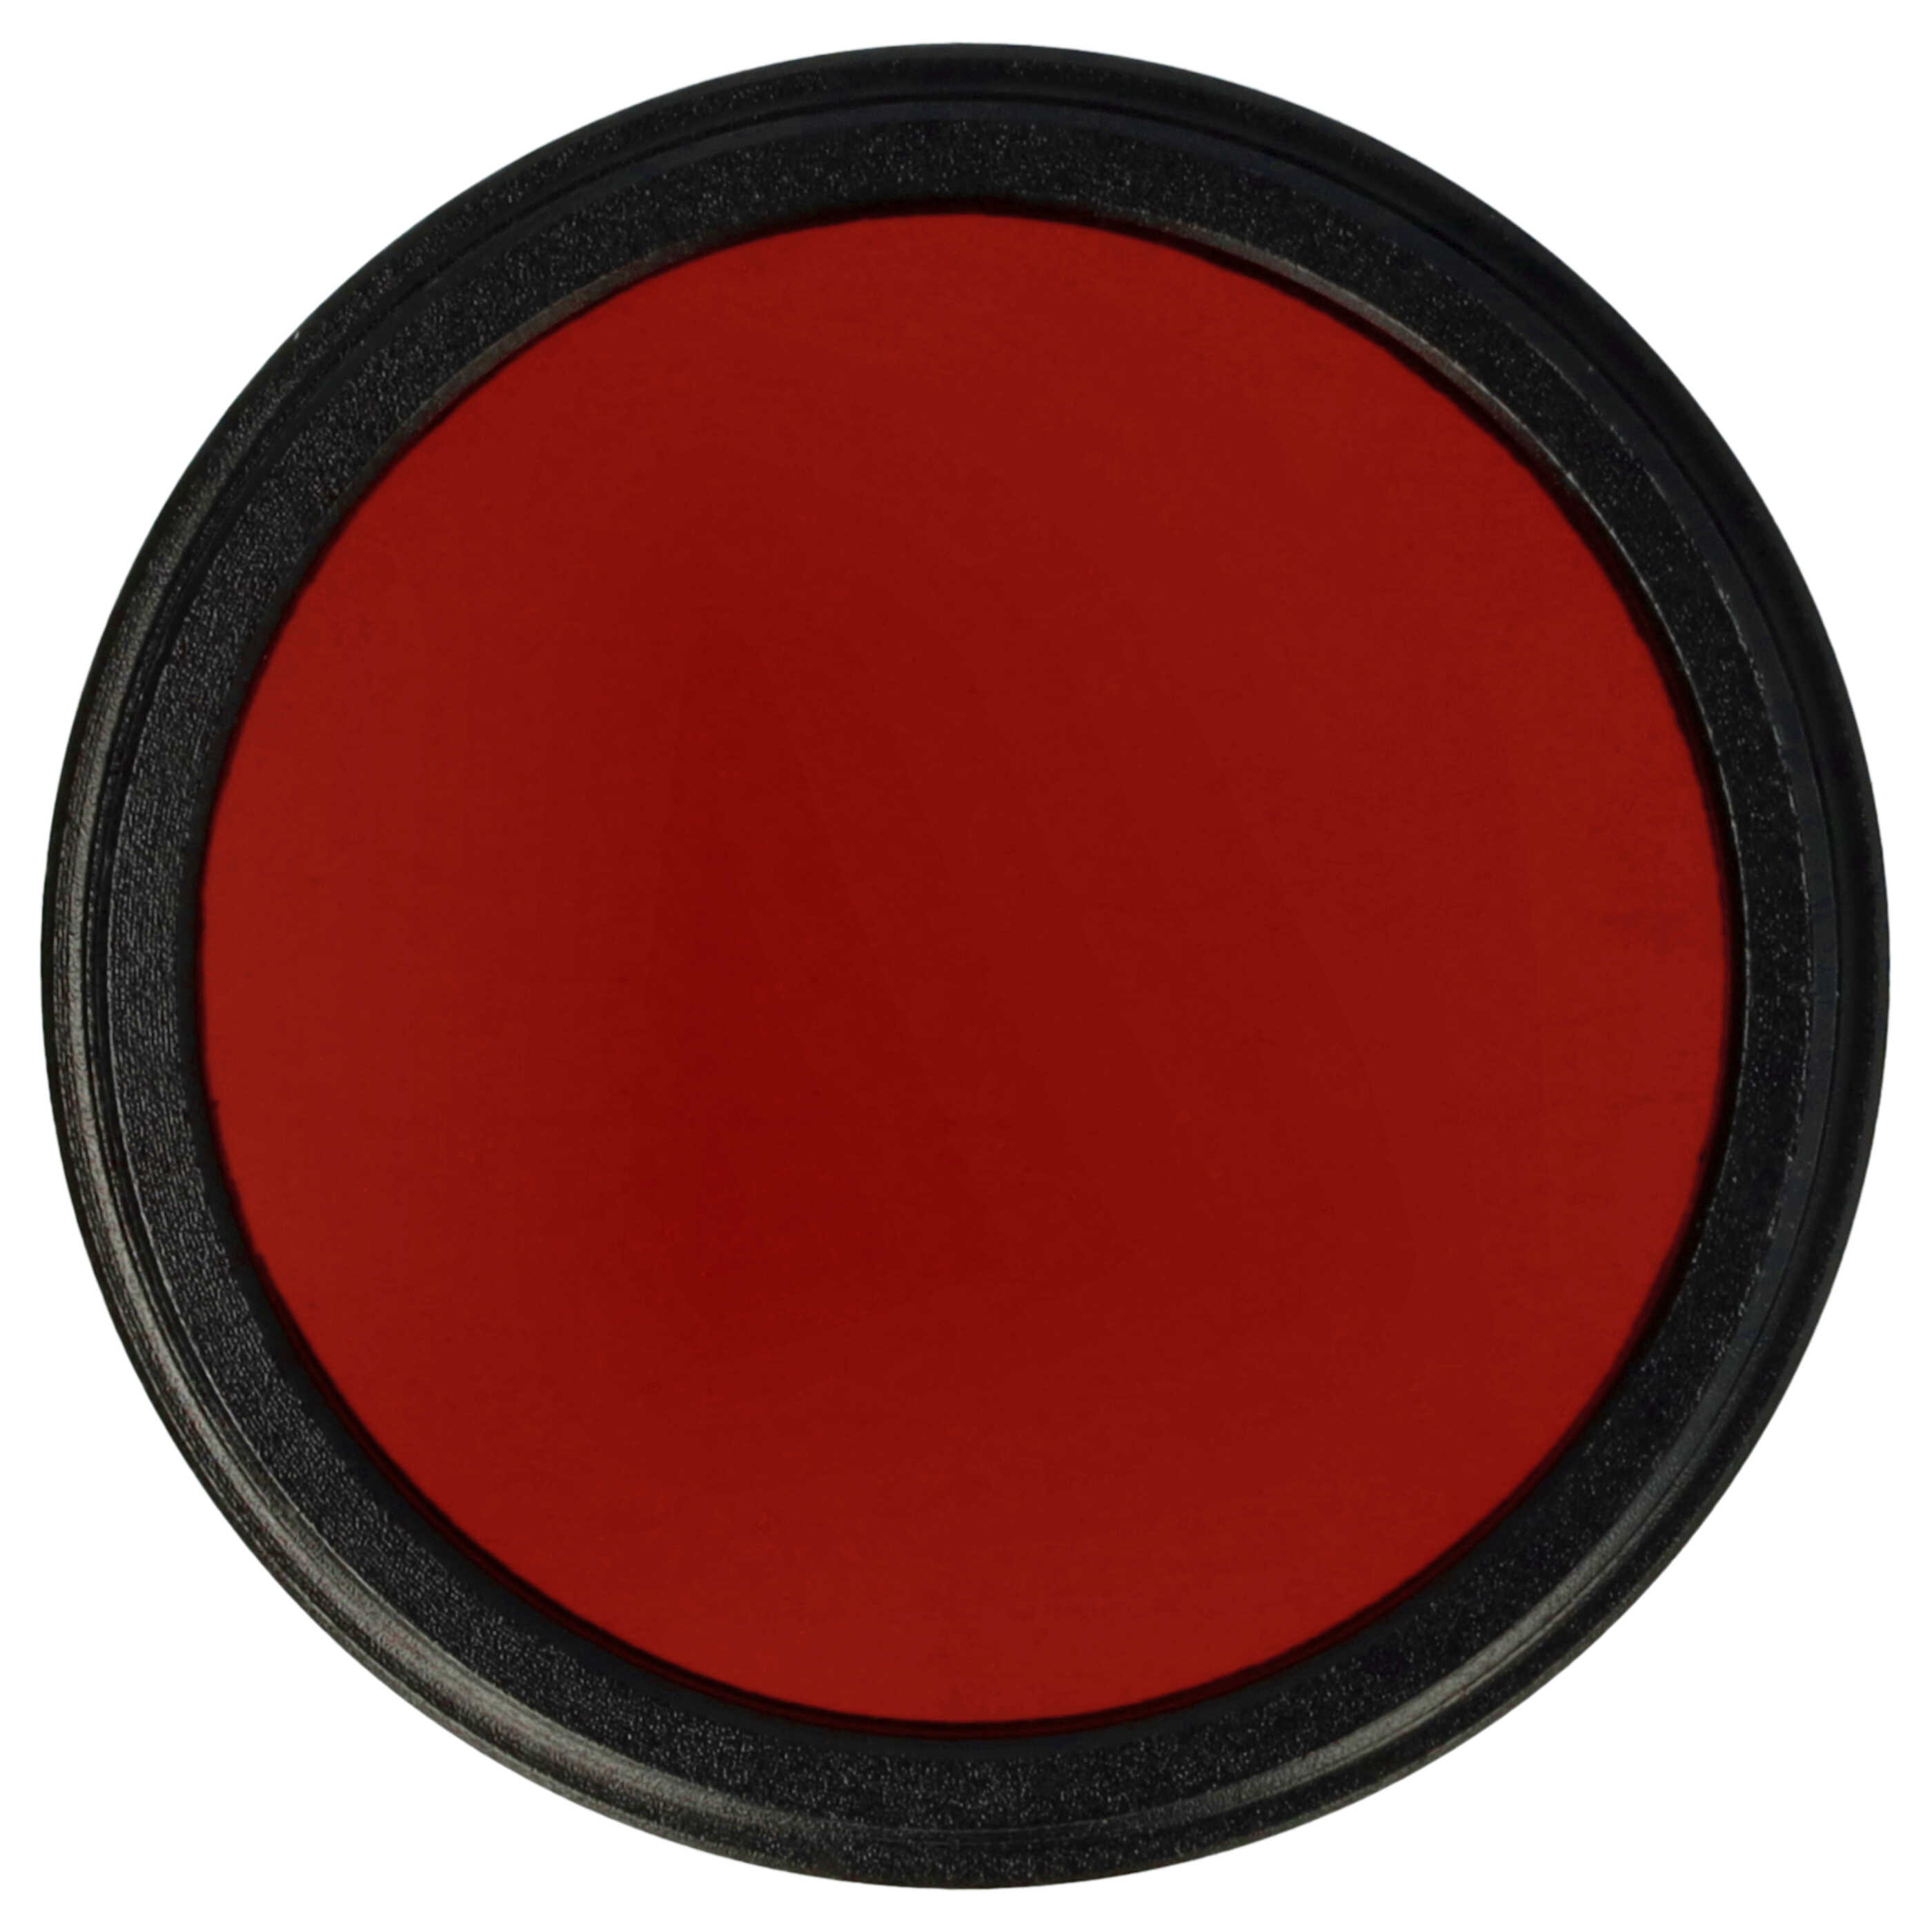 Filtro colorato per obiettivi fotocamera con filettatura da 37 mm - filtro rosso